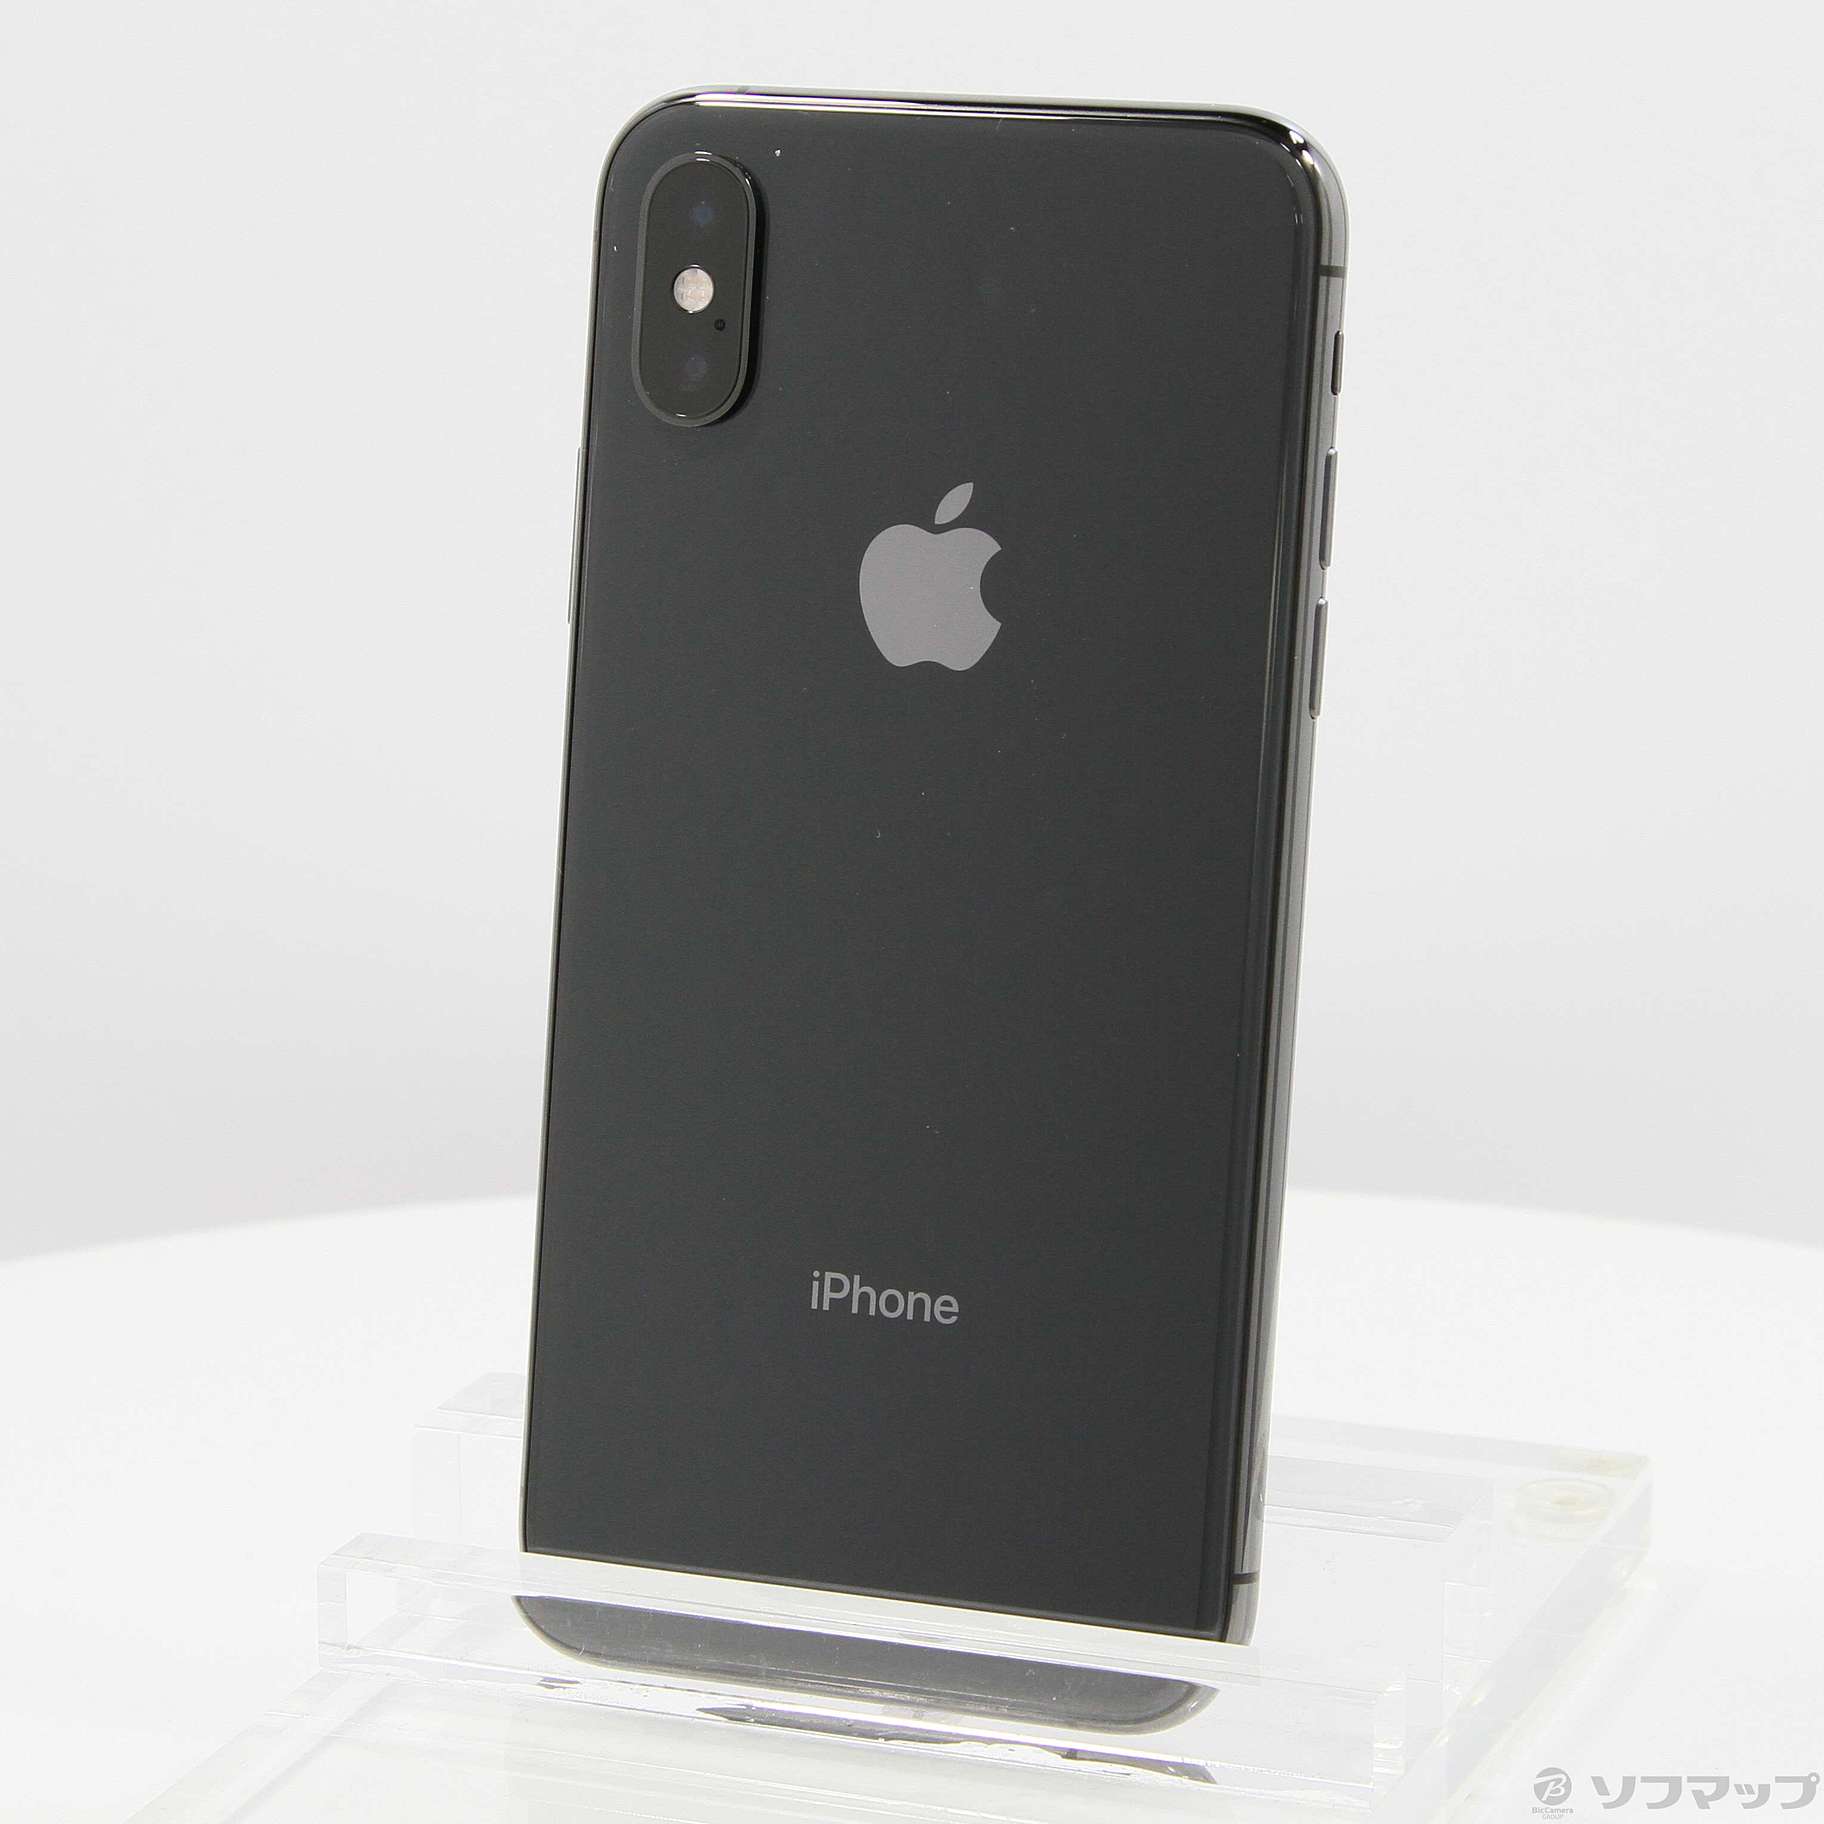 8,100円iPhone Xs スペースグレー 64GB